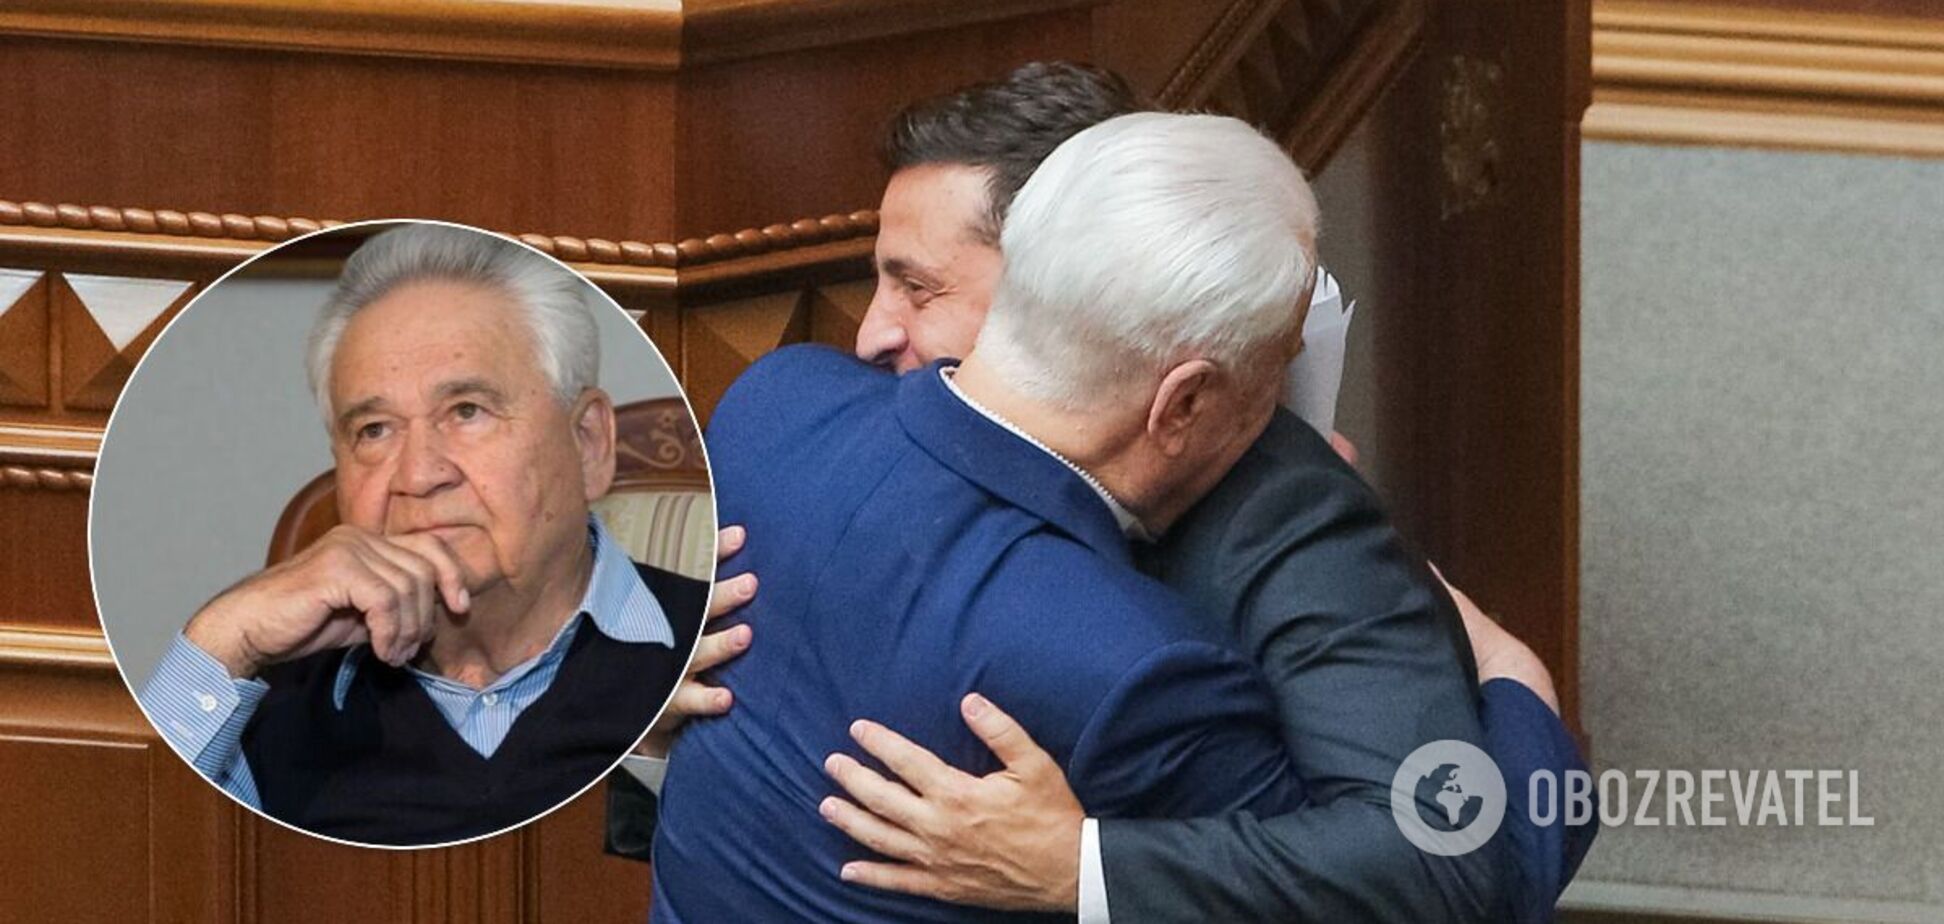 Зеленский рассказал, как 86-летний Кравчук и 87-летний Фокин 'поднимают' переговоры по Донбассу